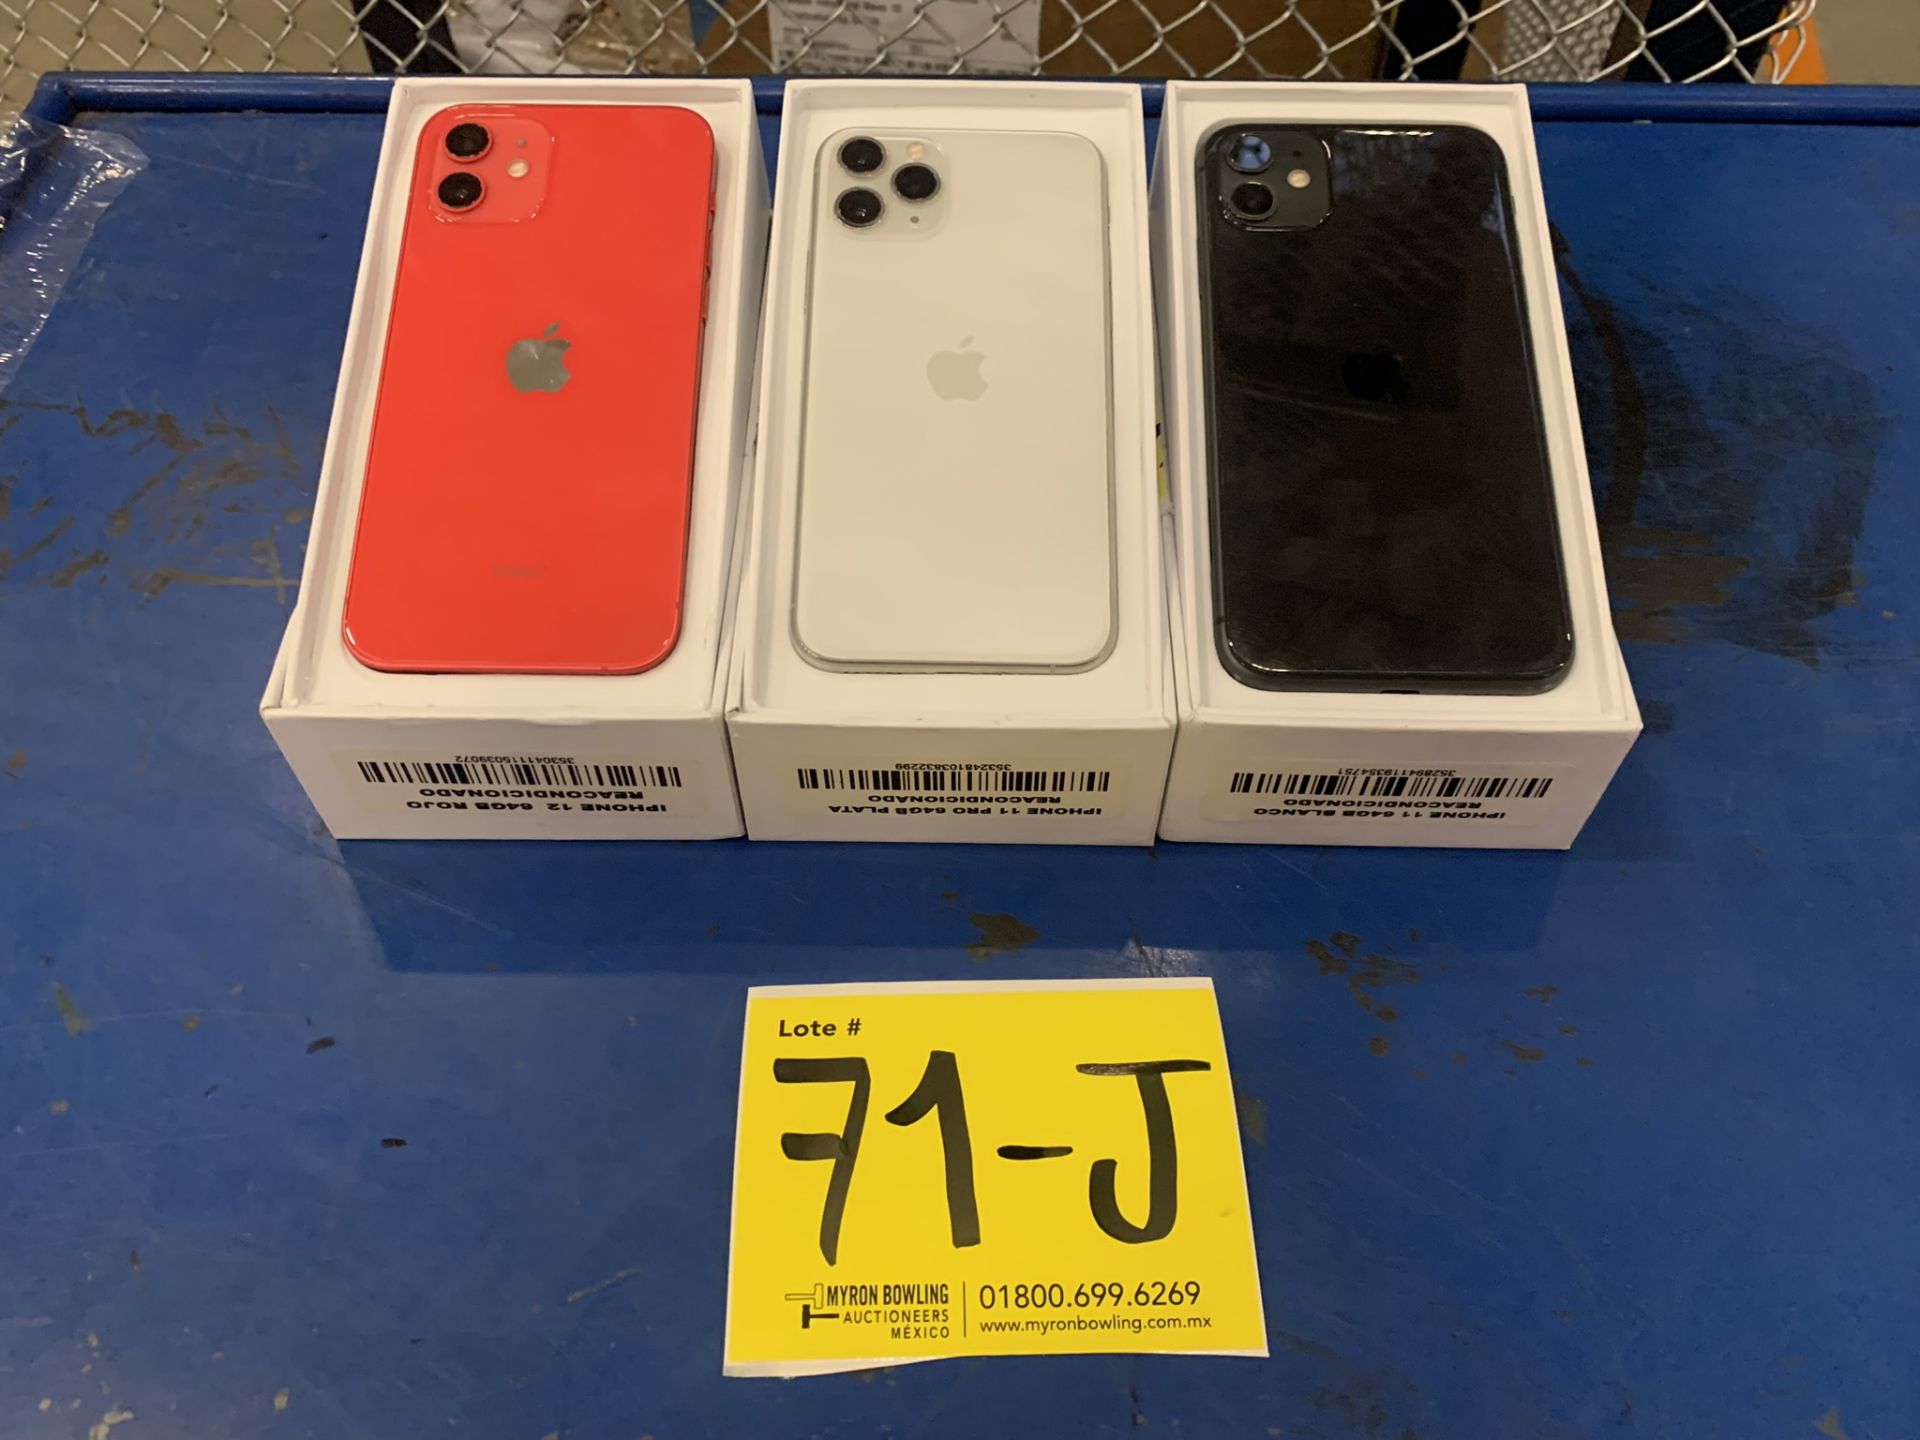 Lote De 3 Teléfonos Celular Contiene: 1 Iphone Marca Apple, Modelo 12, Color Rojo, 64 GB De Alm - Image 2 of 9